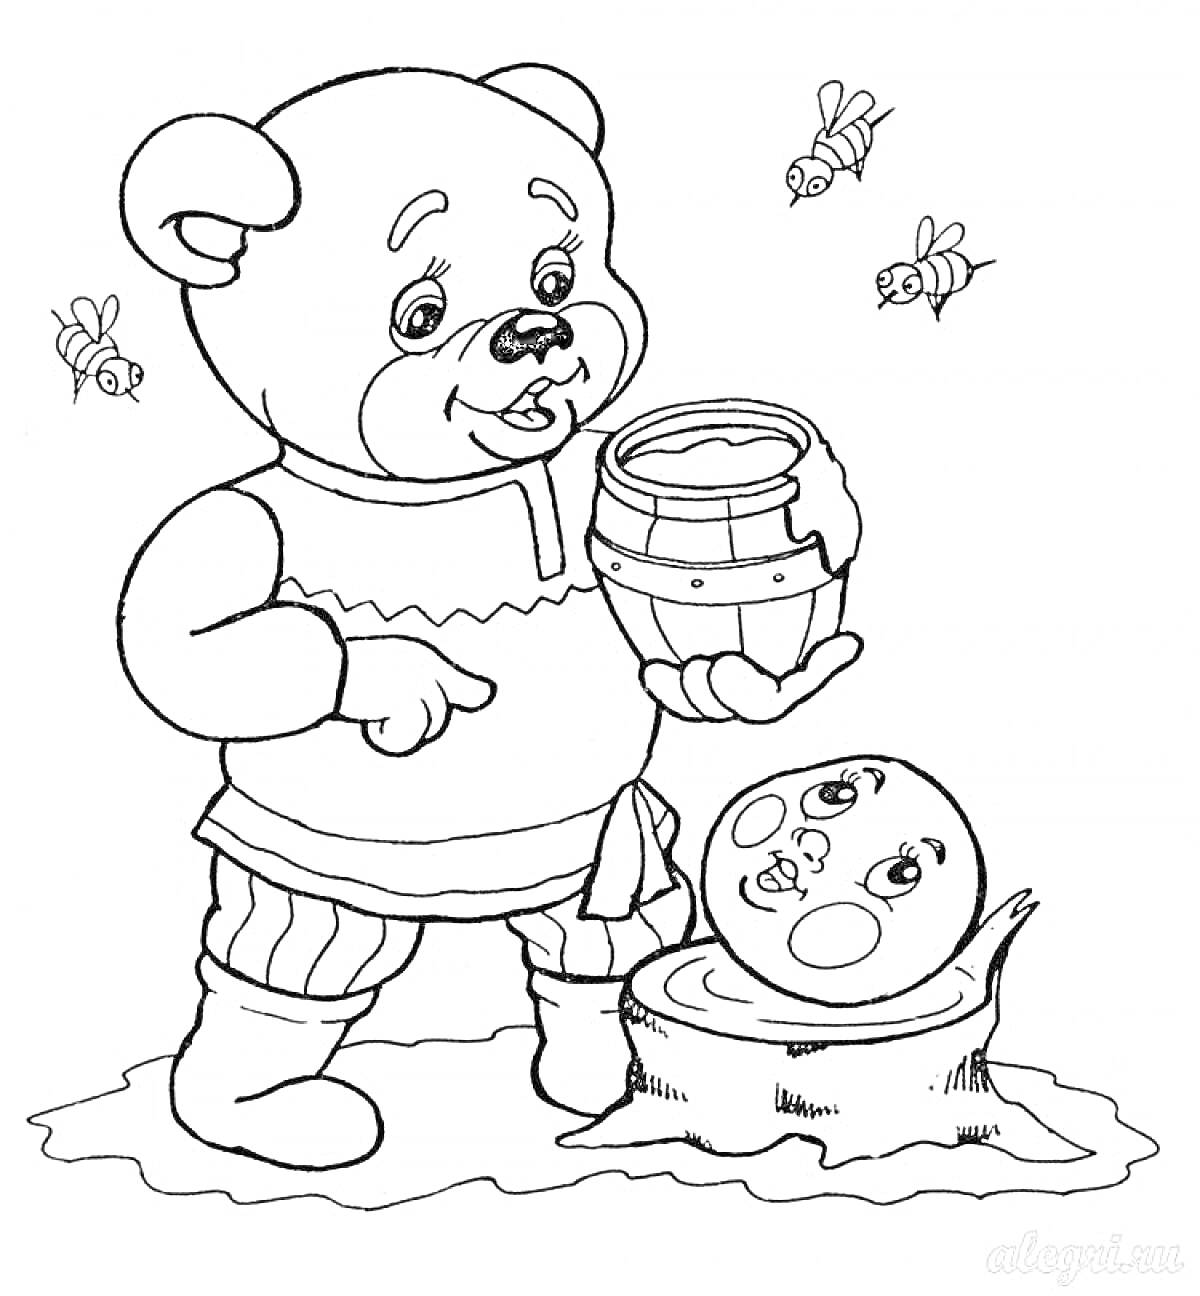 Раскраска Медведь с бочонком меда и Колобок на пеньке, вокруг летают пчелы